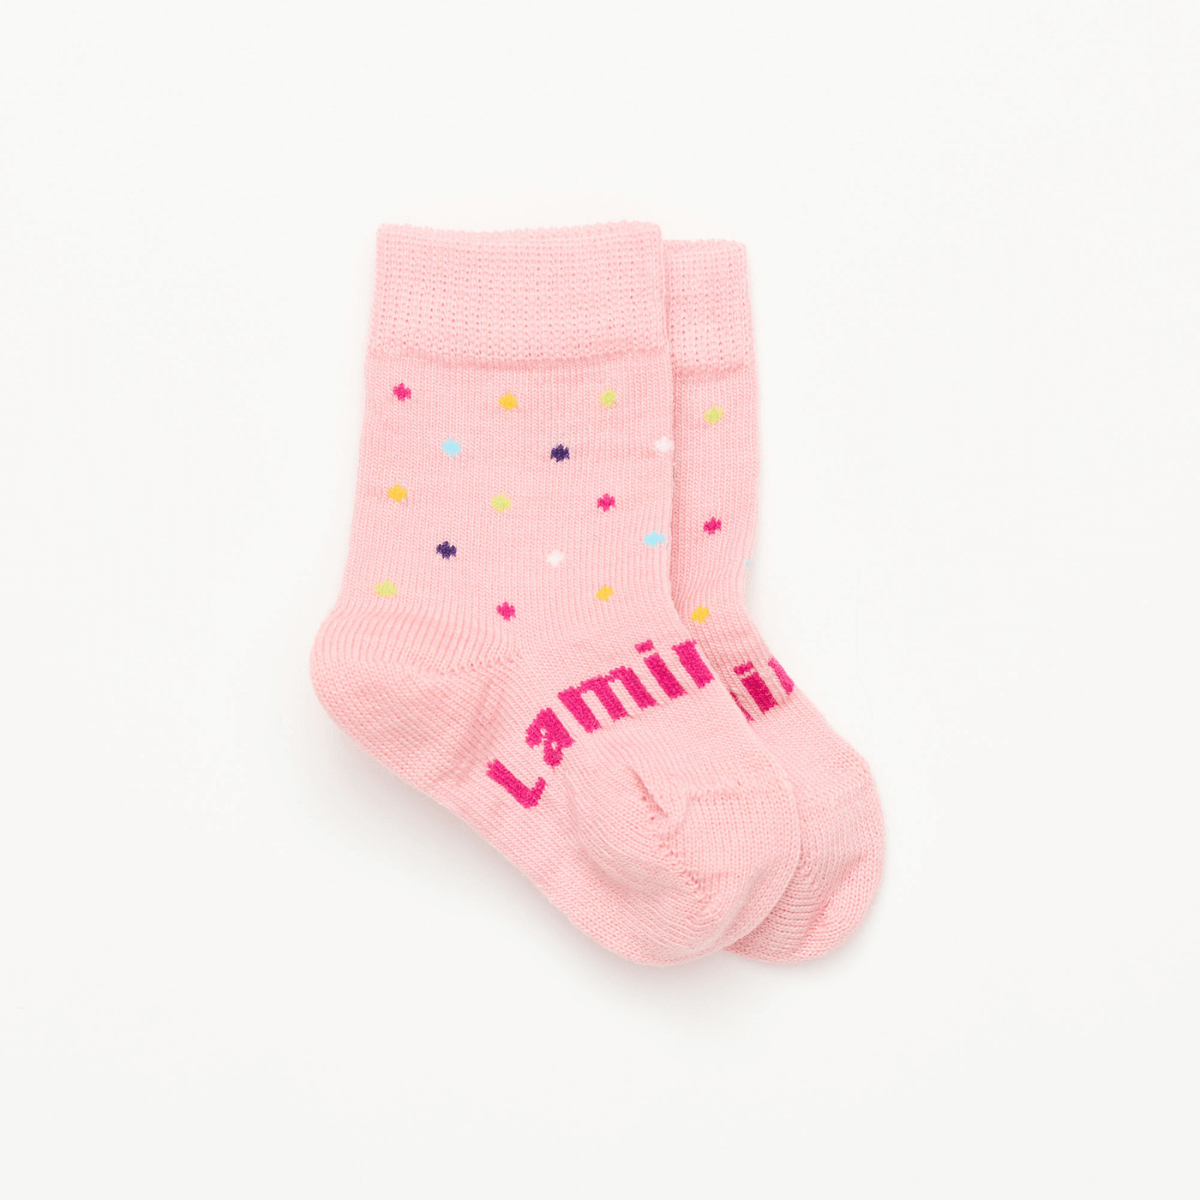 merino wool baby socks crew pink nz aus